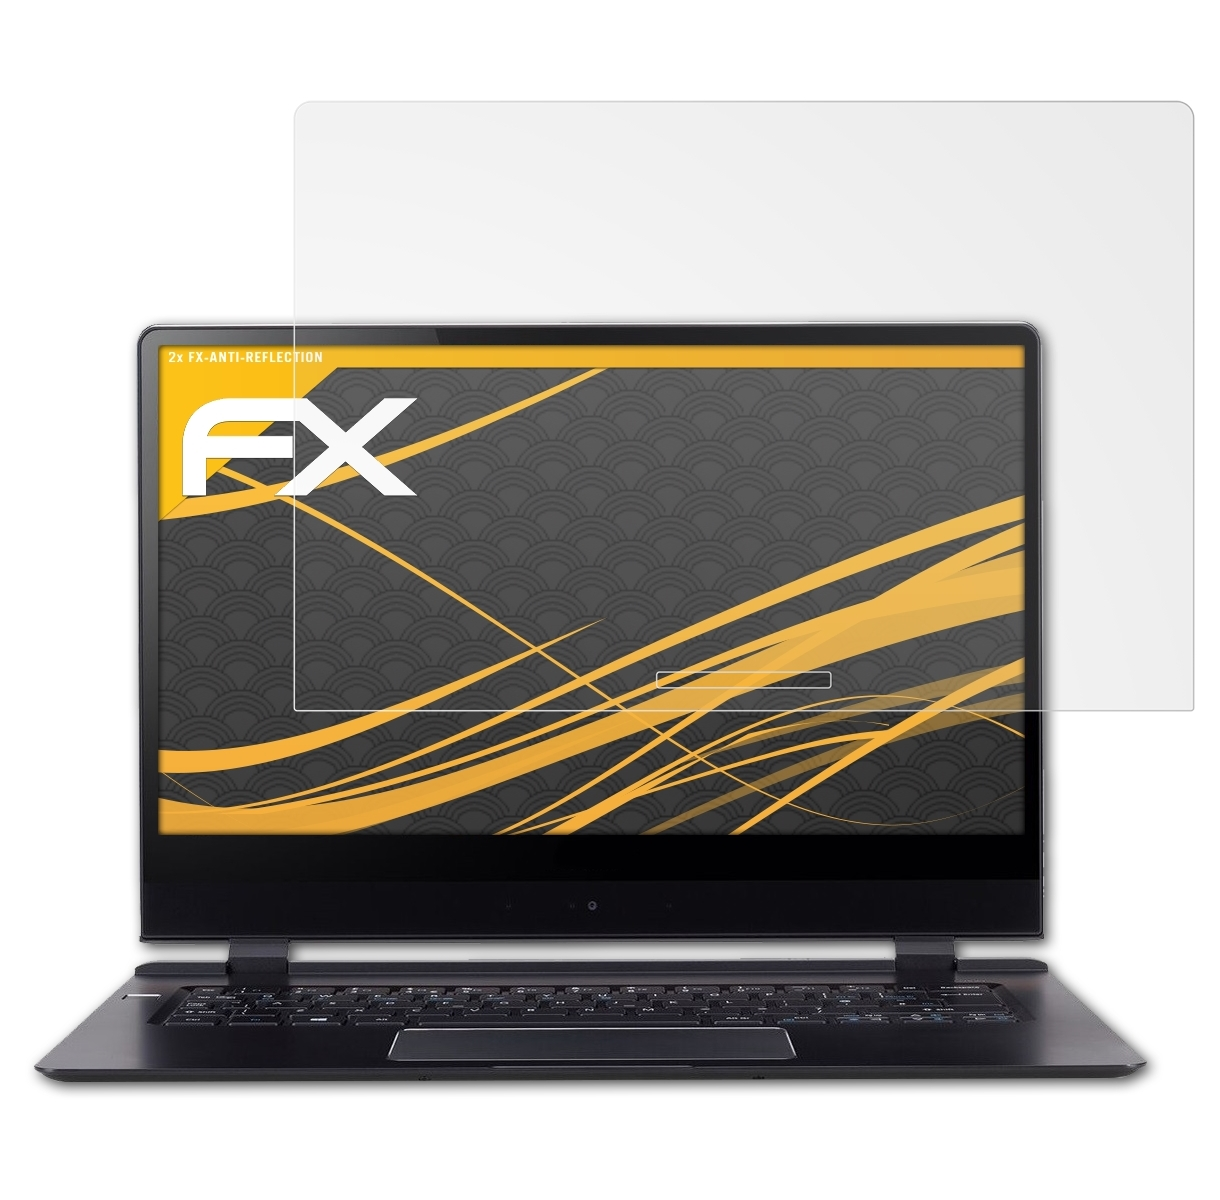 ATFOLIX 2x FX-Antireflex Displayschutz(für Acer 7 (SF714-51T)) Swift 2018